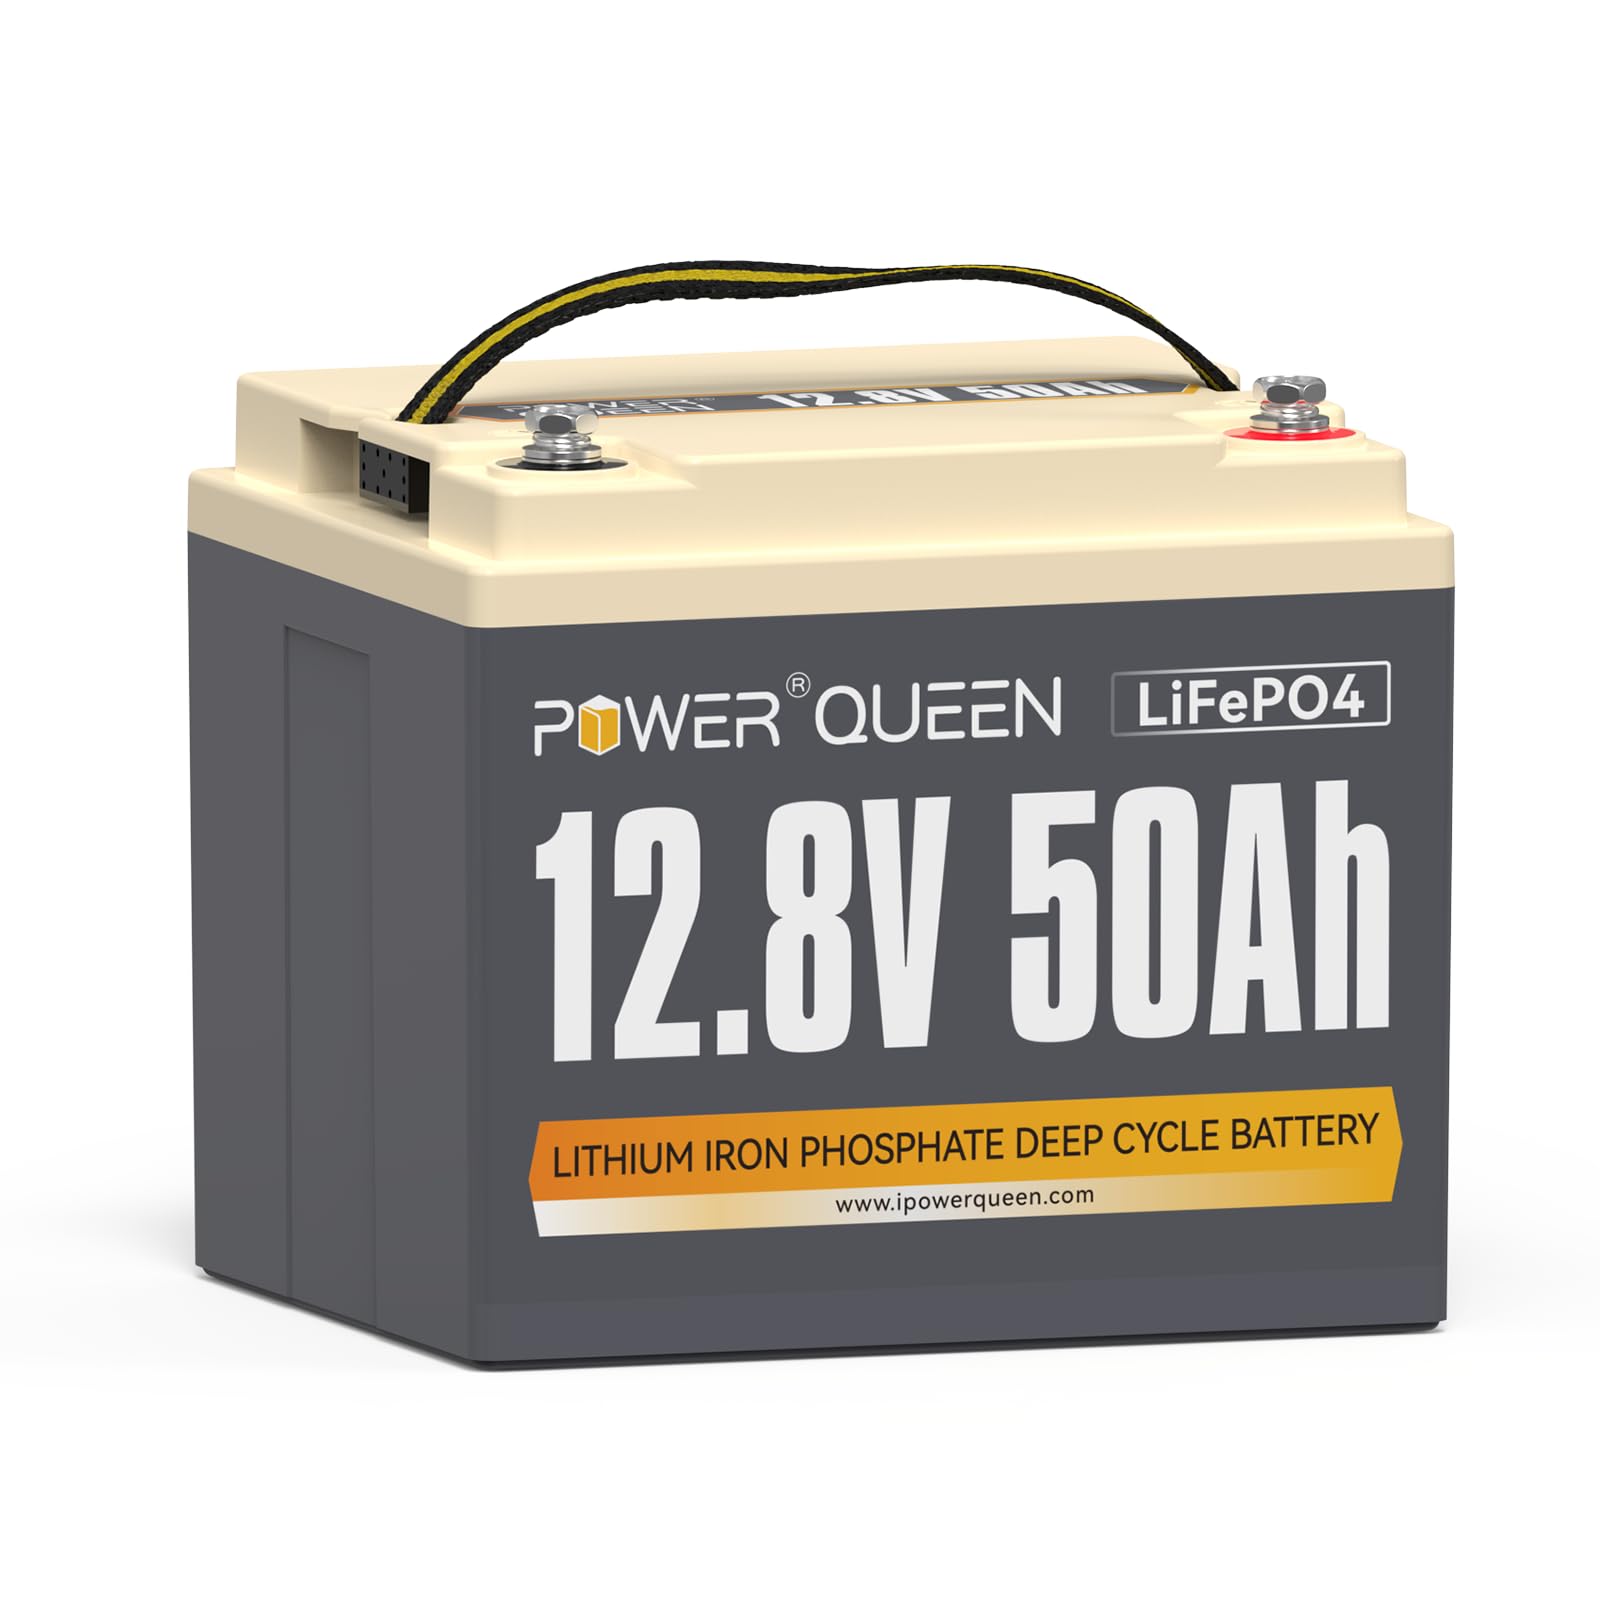 Power Queen 12.8 V 50 Ah LiFePO4 Lithiumbatterie, 640Wh Lithiumbatterie, über 4000+-Zyklen, Ersatzbatterie für Bleisäurebatterie, weit verbreitet in Wohnmobilen, Camping und Solarenergie von power queen